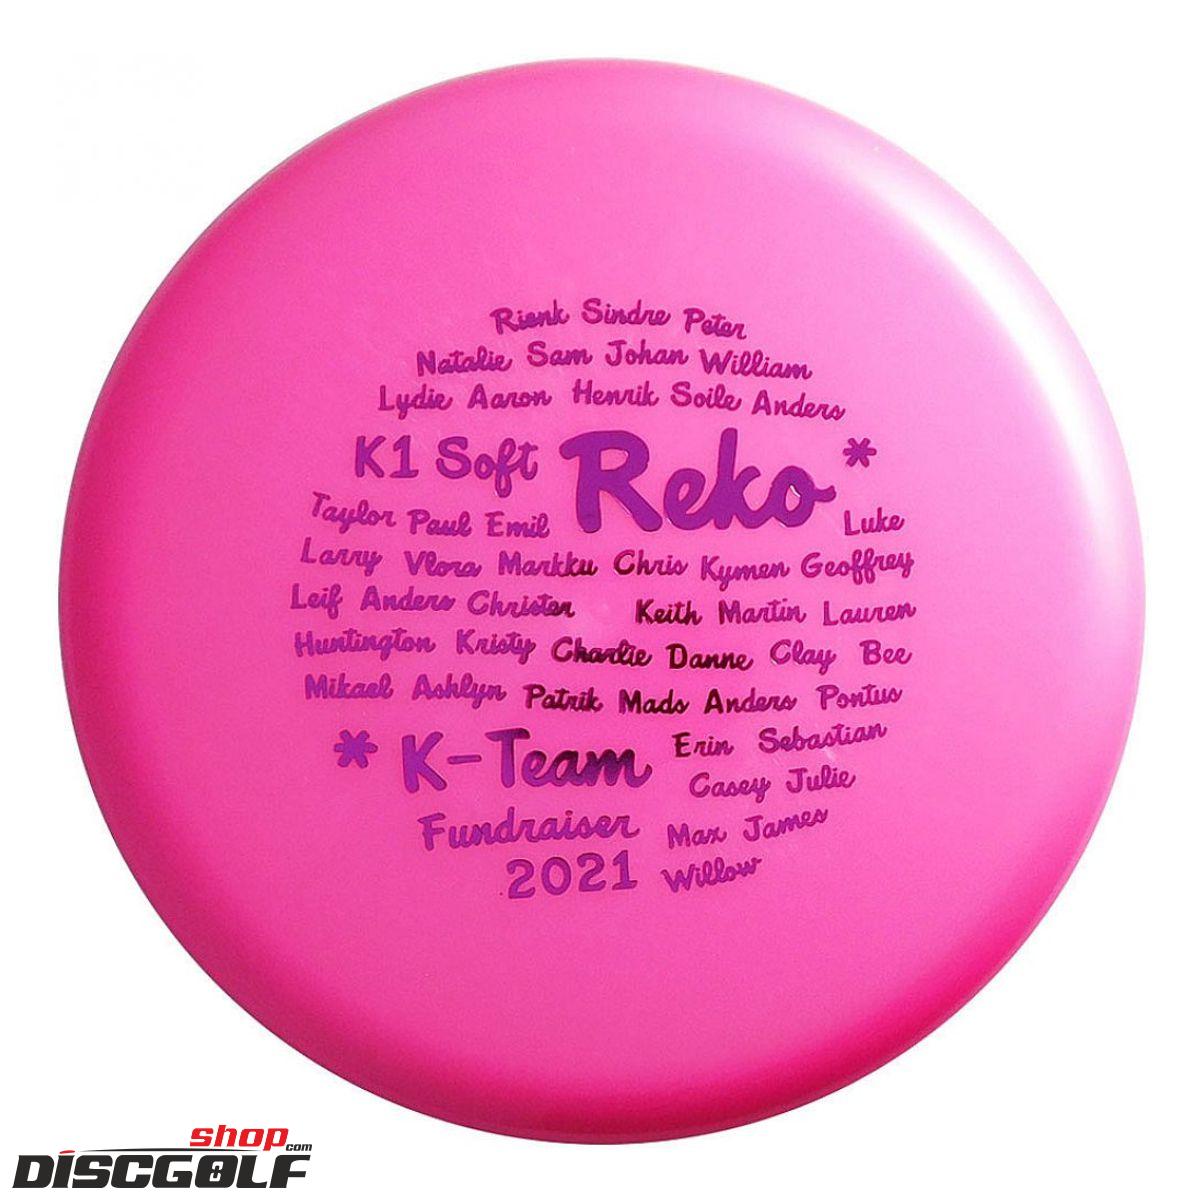 Kastaplast Reko K1 Soft Team Fundraiser 2021 (discgolf)